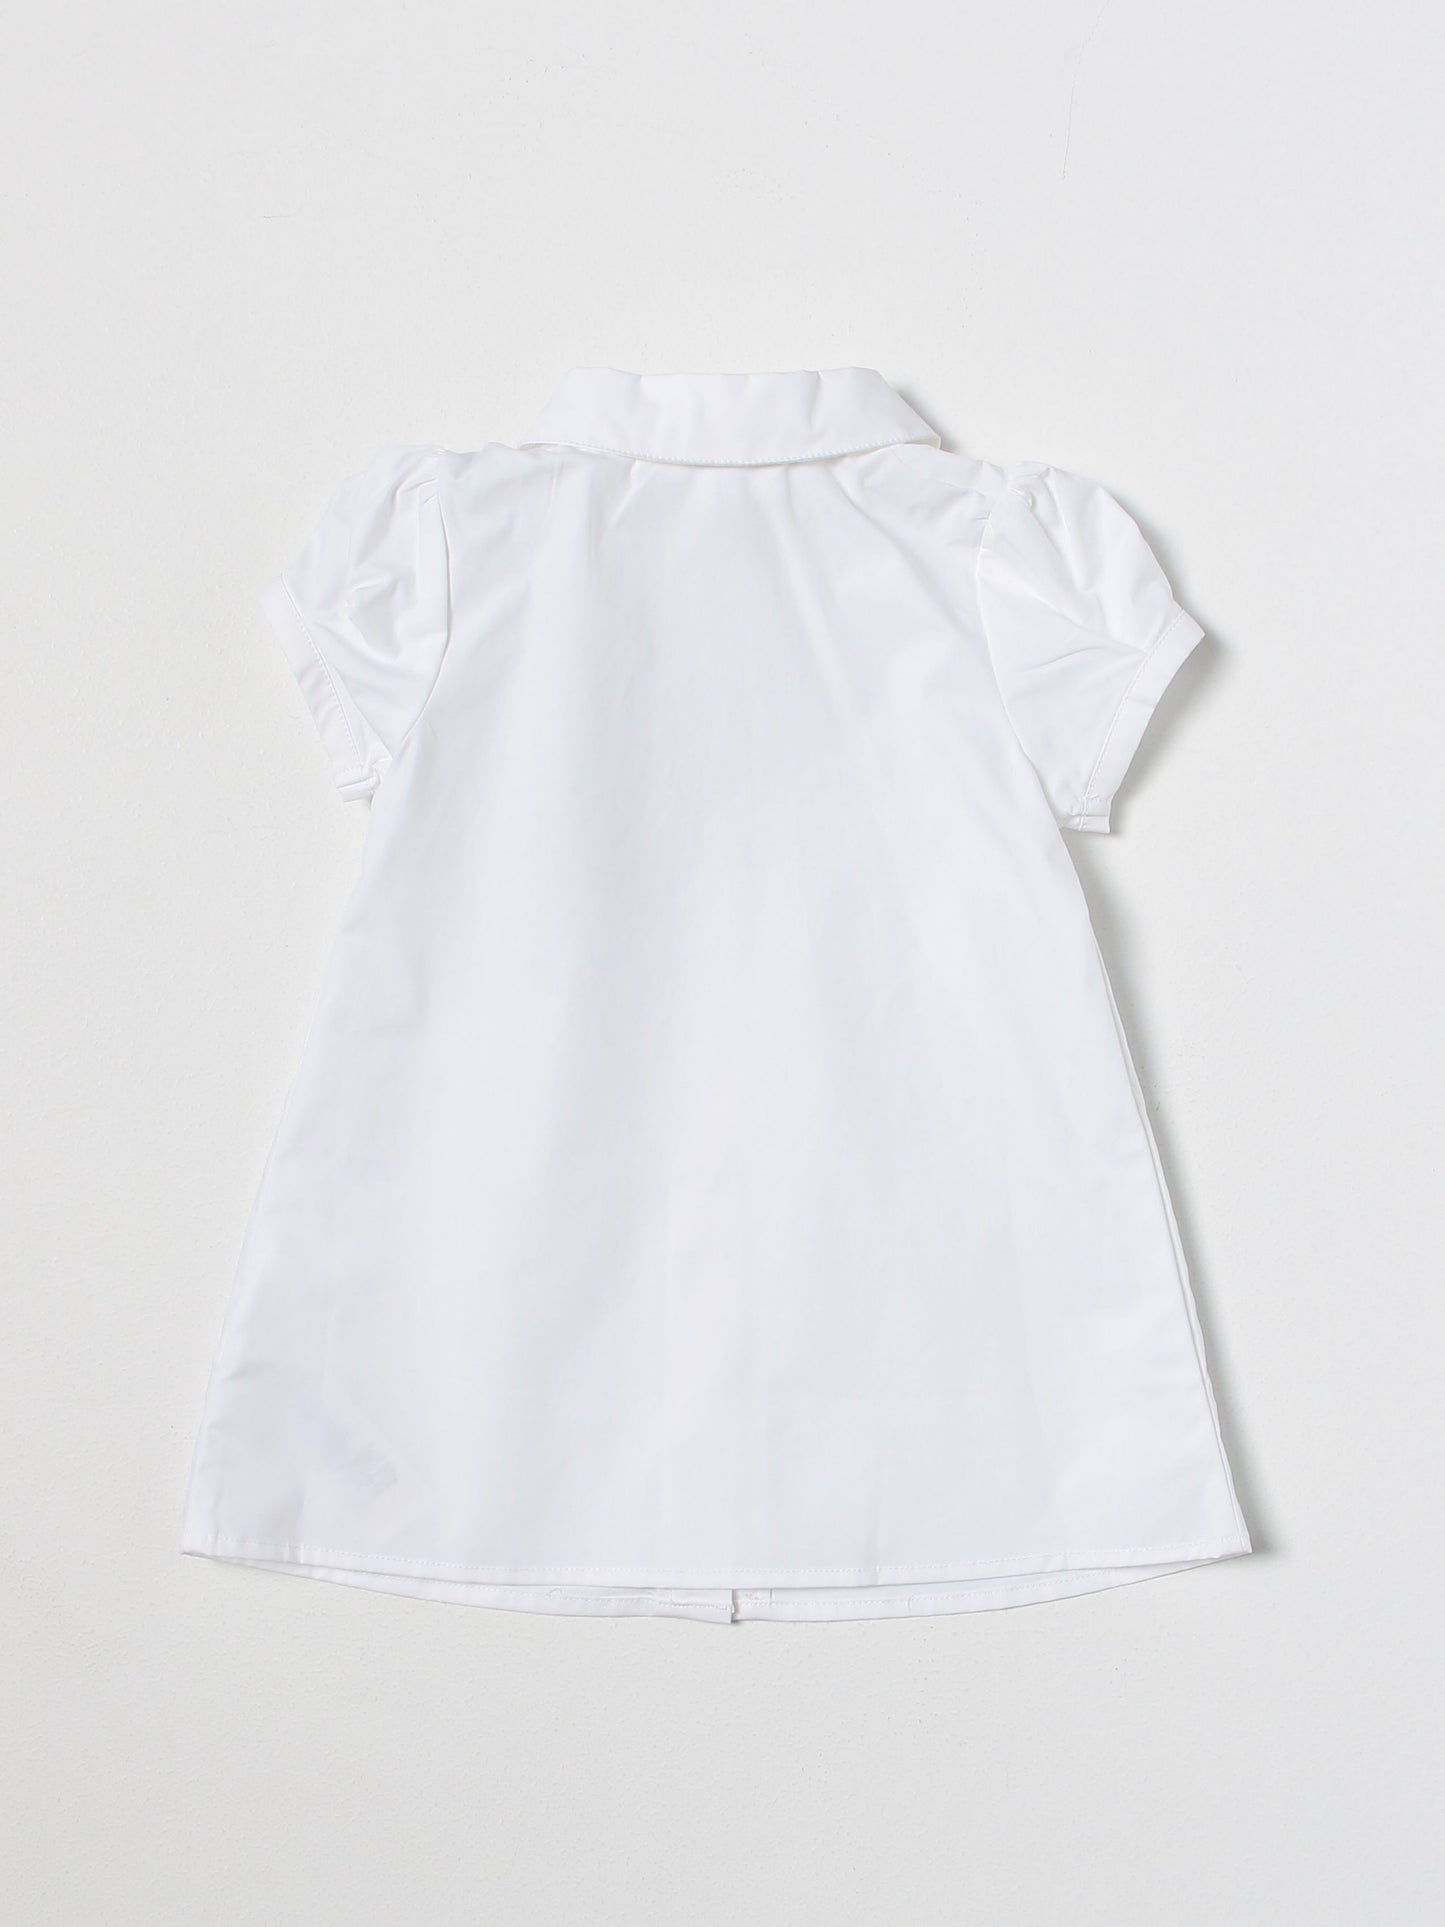 Baby White Shirt Dress